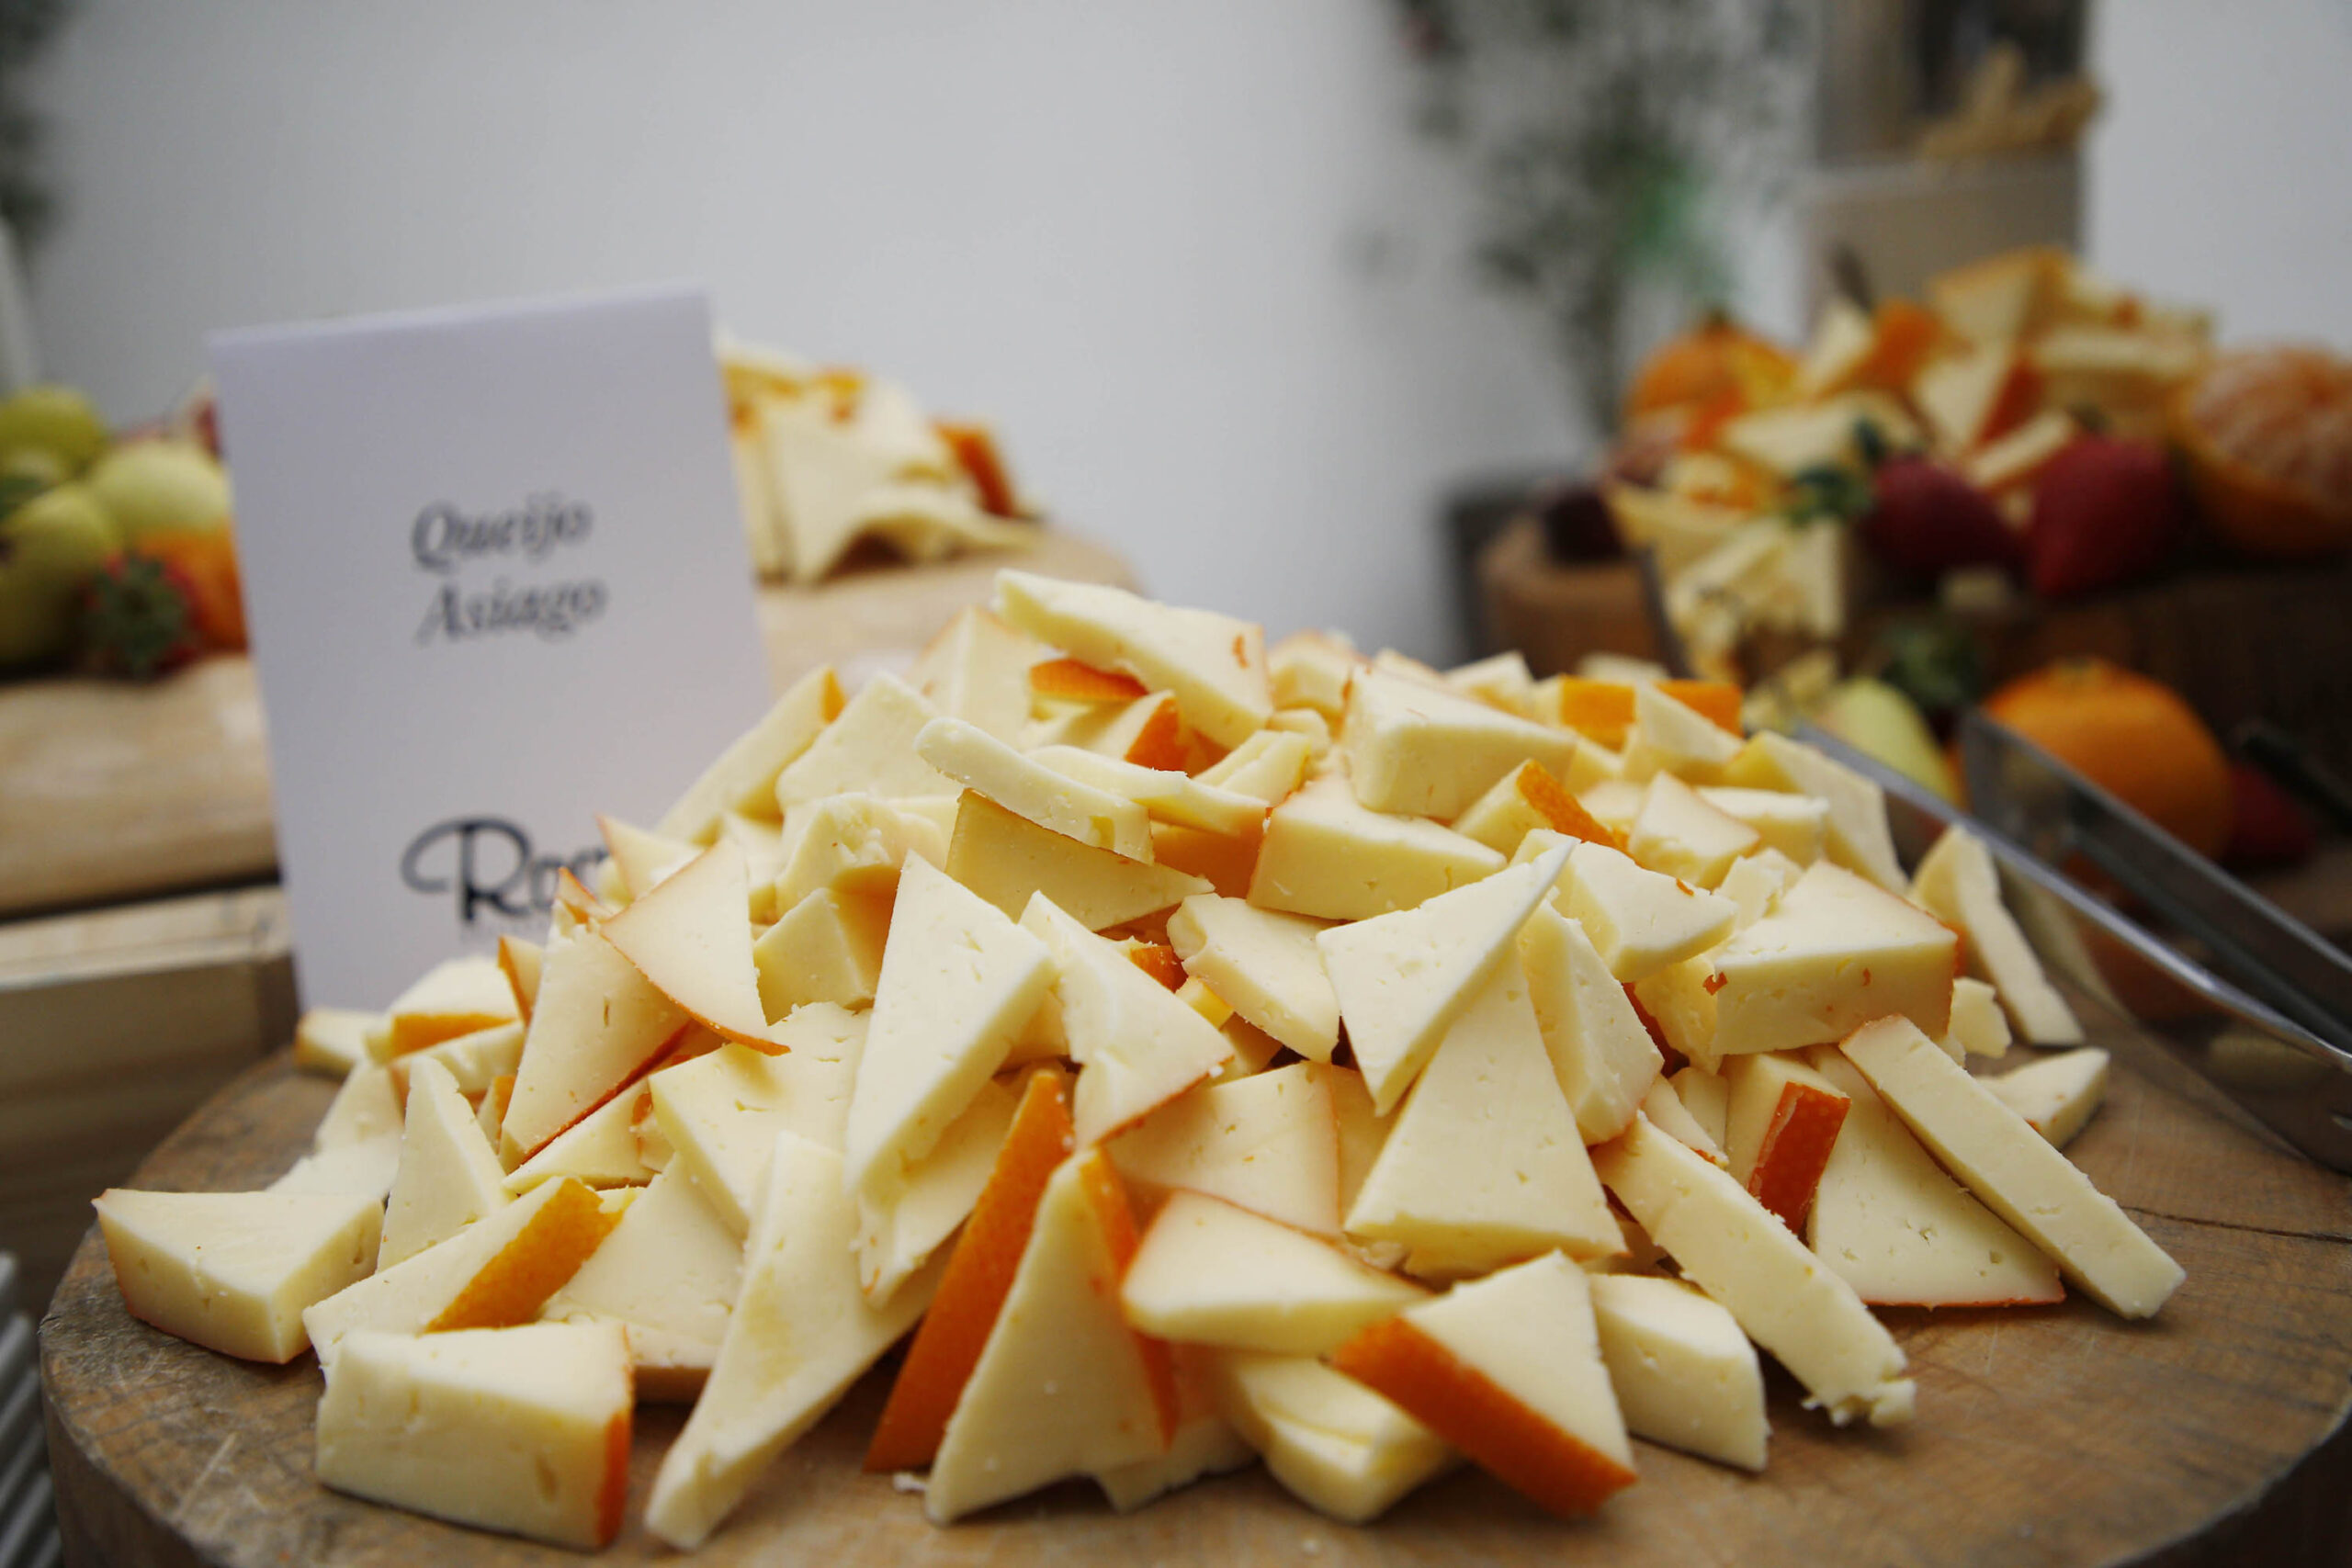 Com foco em premiação, IDR-Paraná promove curso sobre produção de queijo